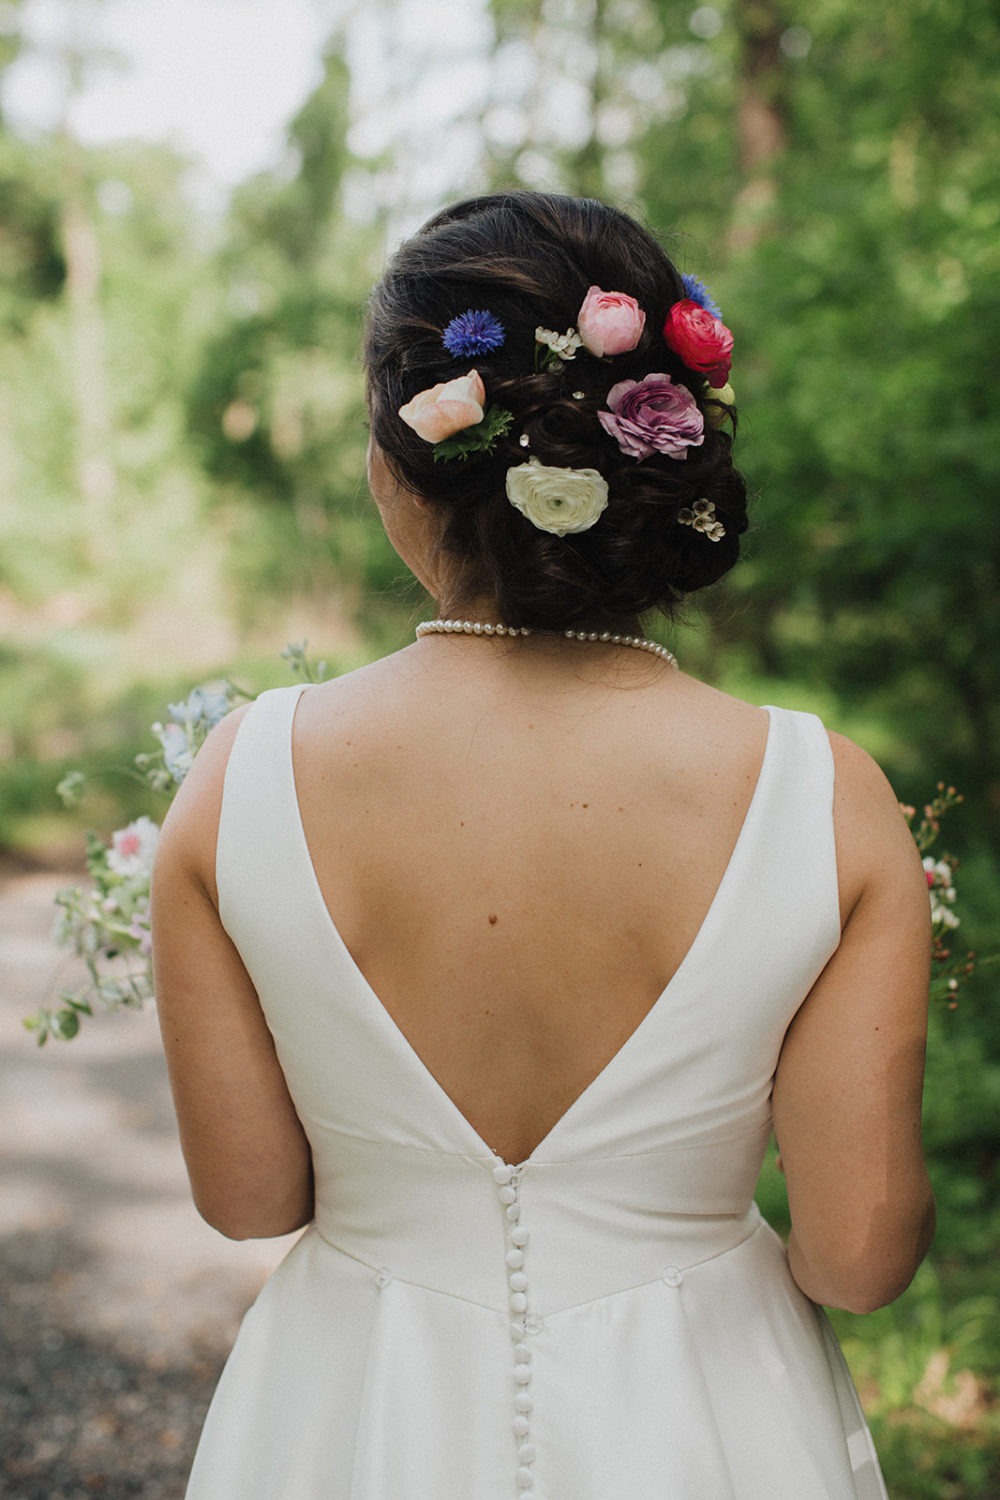 Bride has wildflowers in wedding hair updo